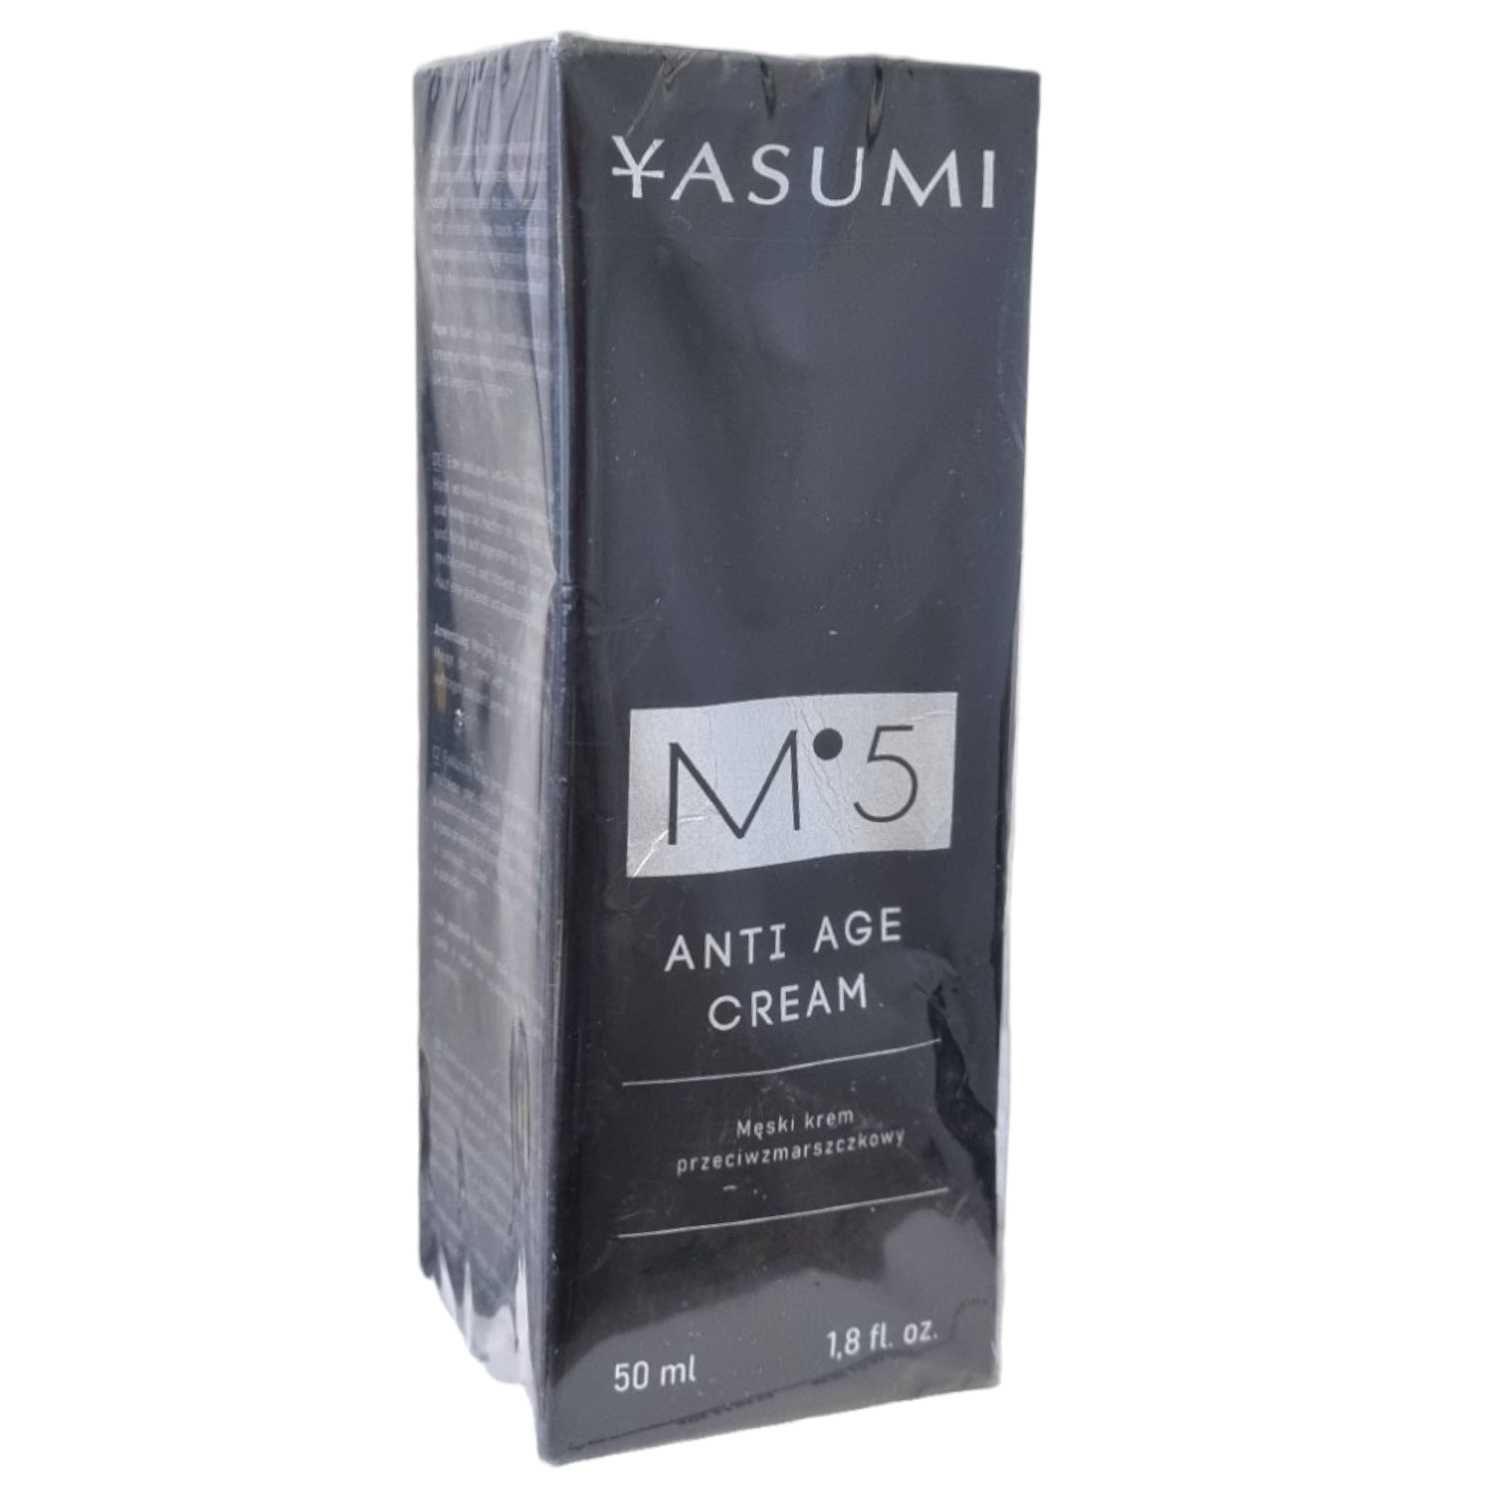 Krem dla mężczyzn przeciwzmarszczkowy YASUMI 50 ml